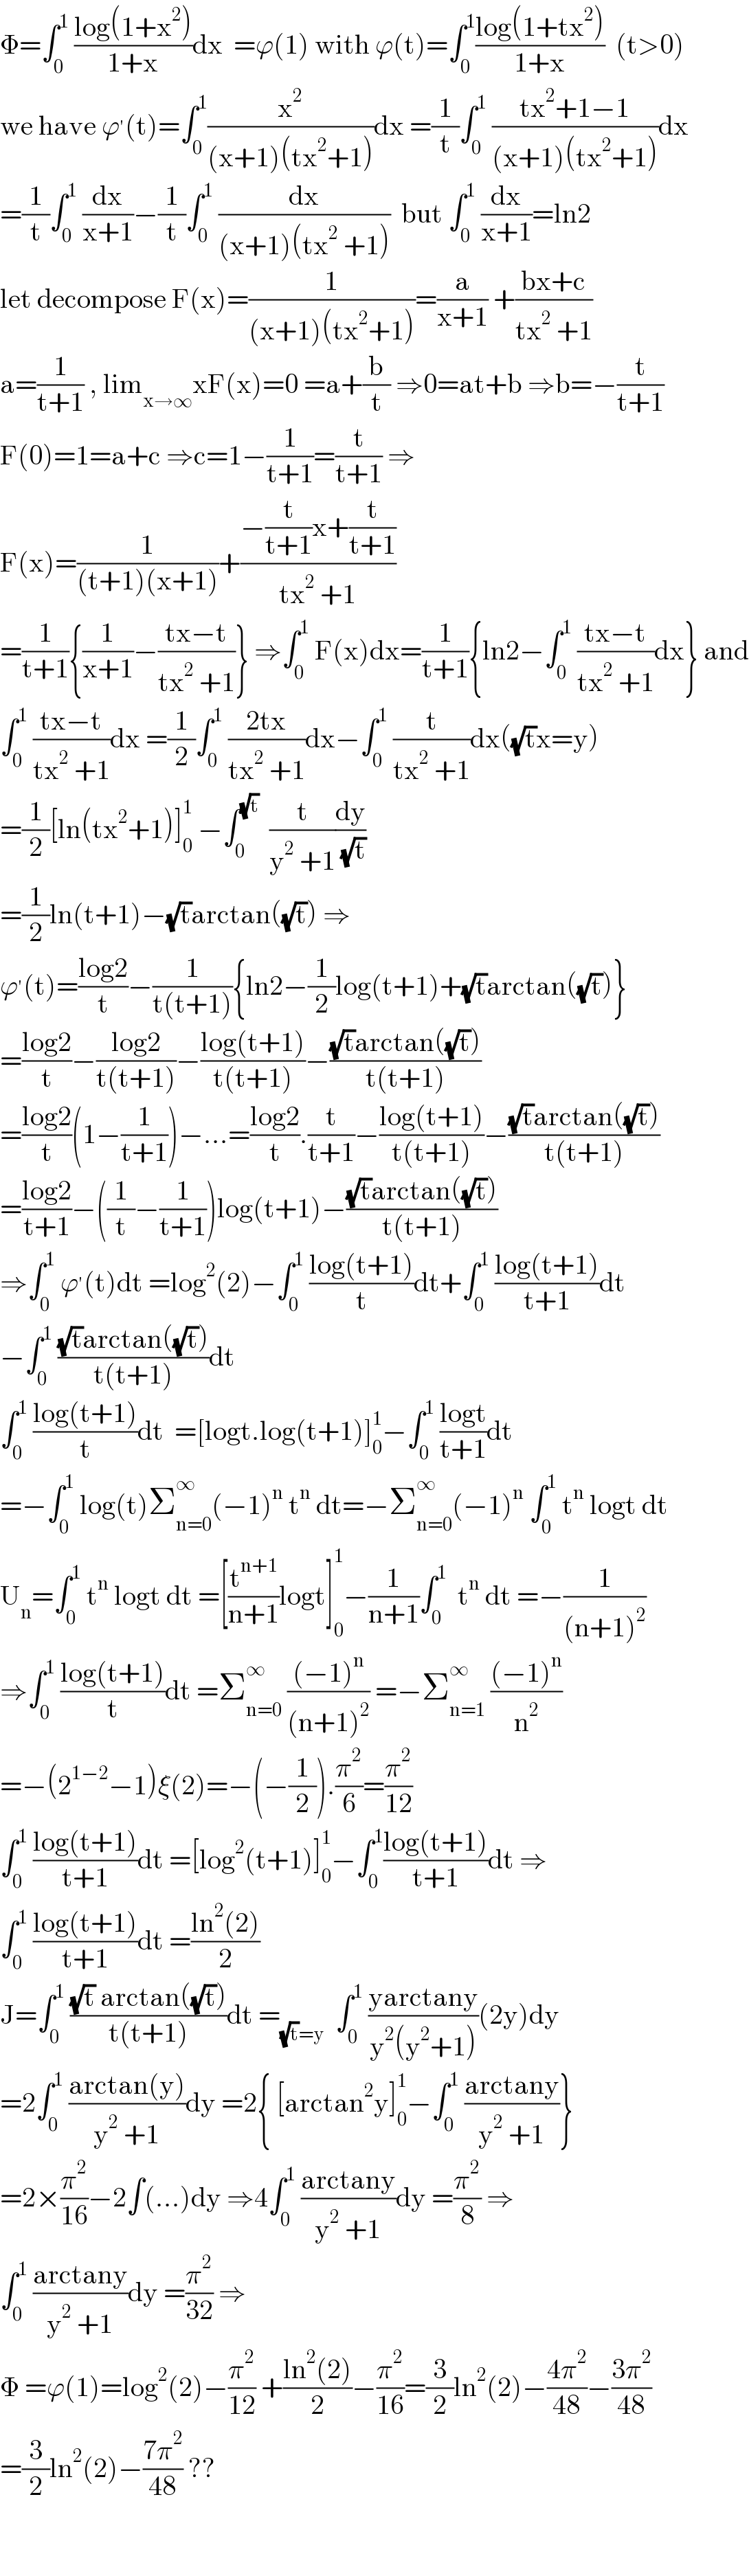 Φ=∫_0 ^1  ((log(1+x^2 ))/(1+x))dx  =ϕ(1) with ϕ(t)=∫_0 ^1 ((log(1+tx^2 ))/(1+x))  (t>0)  we have ϕ^′ (t)=∫_0 ^1 (x^2 /((x+1)(tx^2 +1)))dx =(1/t)∫_0 ^1  ((tx^2 +1−1)/((x+1)(tx^2 +1)))dx  =(1/t)∫_0 ^1  (dx/(x+1))−(1/t)∫_0 ^1  (dx/((x+1)(tx^2  +1)))  but ∫_0 ^1  (dx/(x+1))=ln2  let decompose F(x)=(1/((x+1)(tx^2 +1)))=(a/(x+1)) +((bx+c)/(tx^2  +1))  a=(1/(t+1)) , lim_(x→∞) xF(x)=0 =a+(b/t) ⇒0=at+b ⇒b=−(t/(t+1))  F(0)=1=a+c ⇒c=1−(1/(t+1))=(t/(t+1)) ⇒  F(x)=(1/((t+1)(x+1)))+((−(t/(t+1))x+(t/(t+1)))/(tx^2  +1))  =(1/(t+1)){(1/(x+1))−((tx−t)/(tx^2  +1))} ⇒∫_0 ^1  F(x)dx=(1/(t+1)){ln2−∫_0 ^1  ((tx−t)/(tx^2  +1))dx} and  ∫_0 ^1  ((tx−t)/(tx^2  +1))dx =(1/2)∫_0 ^1  ((2tx)/(tx^2  +1))dx−∫_0 ^1  (t/(tx^2  +1))dx((√t)x=y)  =(1/2)[ln(tx^2 +1)]_0 ^1  −∫_0 ^(√t)   (t/(y^2  +1))(dy/( (√t)))  =(1/2)ln(t+1)−(√t)arctan((√t)) ⇒  ϕ^′ (t)=((log2)/t)−(1/(t(t+1))){ln2−(1/2)log(t+1)+(√t)arctan((√t))}  =((log2)/t)−((log2)/(t(t+1)))−((log(t+1))/(t(t+1)))−(((√t)arctan((√t)))/(t(t+1)))  =((log2)/t)(1−(1/(t+1)))−...=((log2)/t).(t/(t+1))−((log(t+1))/(t(t+1)))−(((√t)arctan((√t)))/(t(t+1)))  =((log2)/(t+1))−((1/t)−(1/(t+1)))log(t+1)−(((√t)arctan((√t)))/(t(t+1)))  ⇒∫_0 ^1  ϕ^′ (t)dt =log^2 (2)−∫_0 ^1  ((log(t+1))/t)dt+∫_0 ^1  ((log(t+1))/(t+1))dt  −∫_0 ^1  (((√t)arctan((√t)))/(t(t+1)))dt  ∫_0 ^1  ((log(t+1))/t)dt  =[logt.log(t+1)]_0 ^1 −∫_0 ^1  ((logt)/(t+1))dt  =−∫_0 ^1  log(t)Σ_(n=0) ^∞ (−1)^n  t^n  dt=−Σ_(n=0) ^∞ (−1)^n  ∫_0 ^1  t^n  logt dt  U_n =∫_0 ^1  t^n  logt dt =[(t^(n+1) /(n+1))logt]_0 ^1 −(1/(n+1))∫_0 ^1   t^n  dt =−(1/((n+1)^2 ))  ⇒∫_0 ^1  ((log(t+1))/t)dt =Σ_(n=0) ^∞  (((−1)^n )/((n+1)^2 )) =−Σ_(n=1) ^∞  (((−1)^n )/n^2 )  =−(2^(1−2) −1)ξ(2)=−(−(1/2)).(π^2 /6)=(π^2 /(12))  ∫_0 ^1  ((log(t+1))/(t+1))dt =[log^2 (t+1)]_0 ^1 −∫_0 ^1 ((log(t+1))/(t+1))dt ⇒  ∫_0 ^1  ((log(t+1))/(t+1))dt =((ln^2 (2))/2)  J=∫_0 ^1  (((√t) arctan((√t)))/(t(t+1)))dt =_((√t)=y)   ∫_0 ^1  ((yarctany)/(y^2 (y^2 +1)))(2y)dy  =2∫_0 ^1  ((arctan(y))/(y^2  +1))dy =2{ [arctan^2 y]_0 ^1 −∫_0 ^1  ((arctany)/(y^2  +1))}  =2×(π^2 /(16))−2∫(...)dy ⇒4∫_0 ^1  ((arctany)/(y^2  +1))dy =(π^2 /8) ⇒  ∫_0 ^1  ((arctany)/(y^2  +1))dy =(π^2 /(32)) ⇒  Φ =ϕ(1)=log^2 (2)−(π^2 /(12)) +((ln^2 (2))/2)−(π^2 /(16))=(3/2)ln^2 (2)−((4π^2 )/(48))−((3π^2 )/(48))  =(3/2)ln^2 (2)−((7π^2 )/(48)) ??      